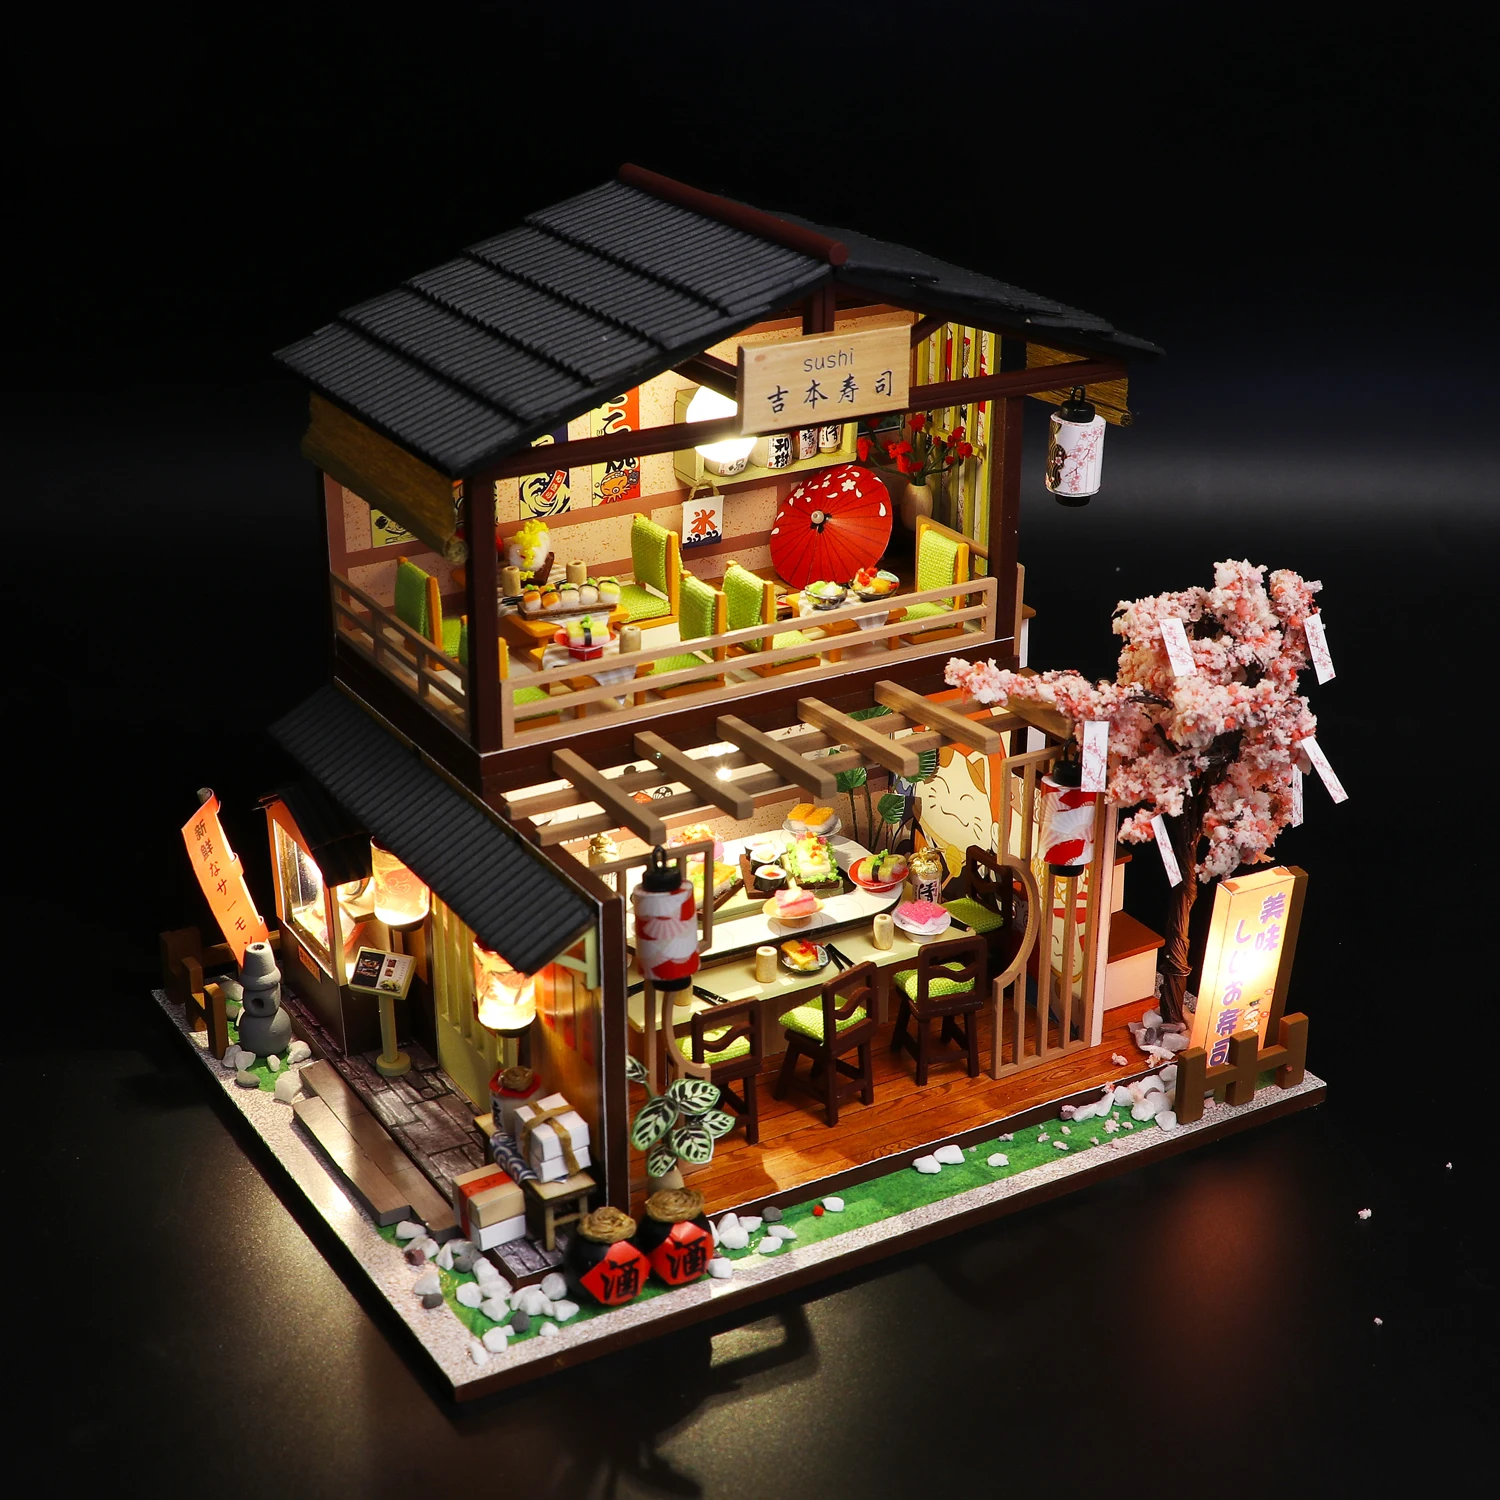 Cutebee miniatura boneca estilo japonês casa acessórios móveis miniaturas construção mini roombox brinquedo de madeira presente